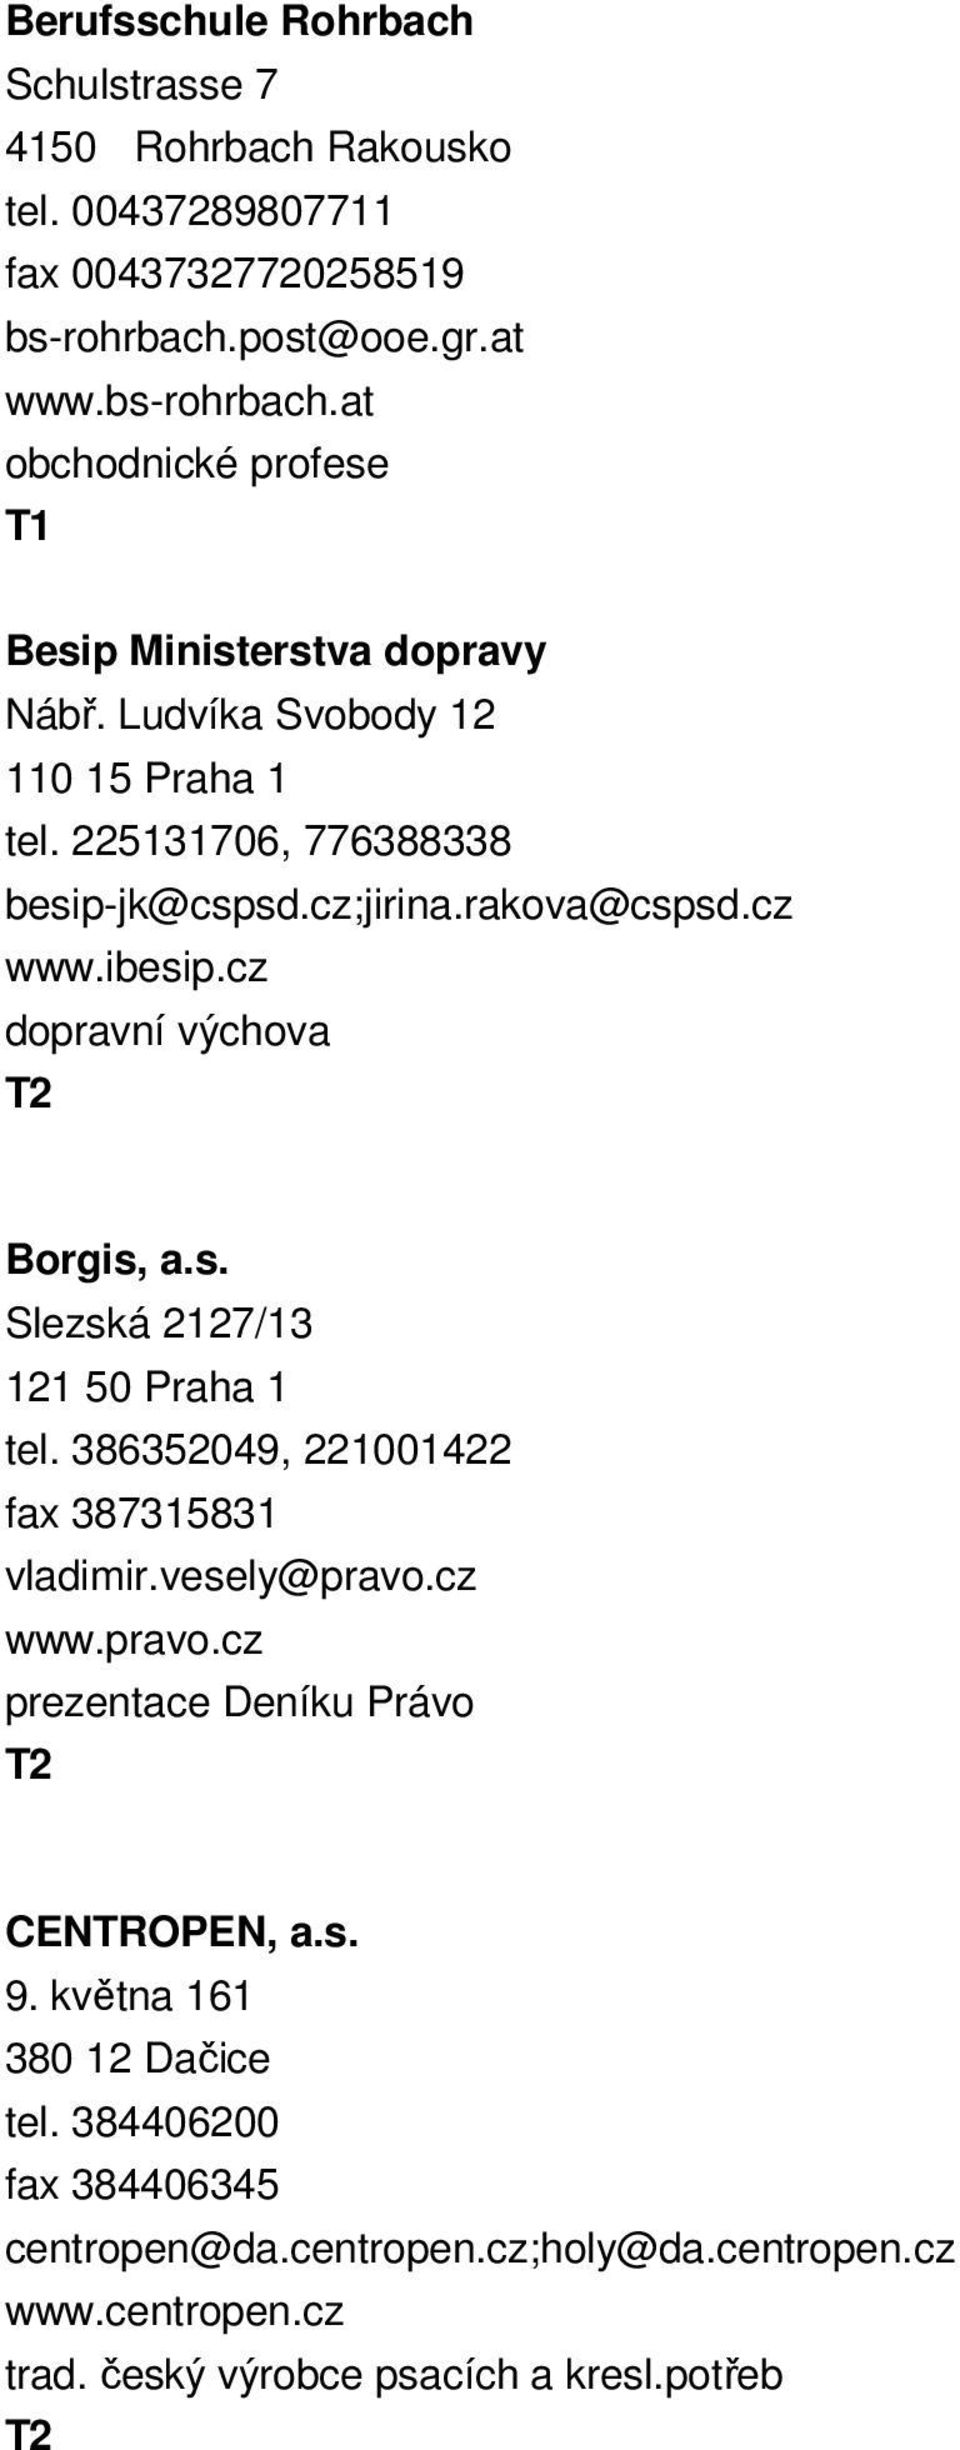 cz;jirina.rakova@cspsd.cz www.ibesip.cz dopravní výchova Borgis, a.s. Slezská 2127/13 121 50 Praha 1 tel. 386352049, 221001422 fax 387315831 vladimir.vesely@pravo.